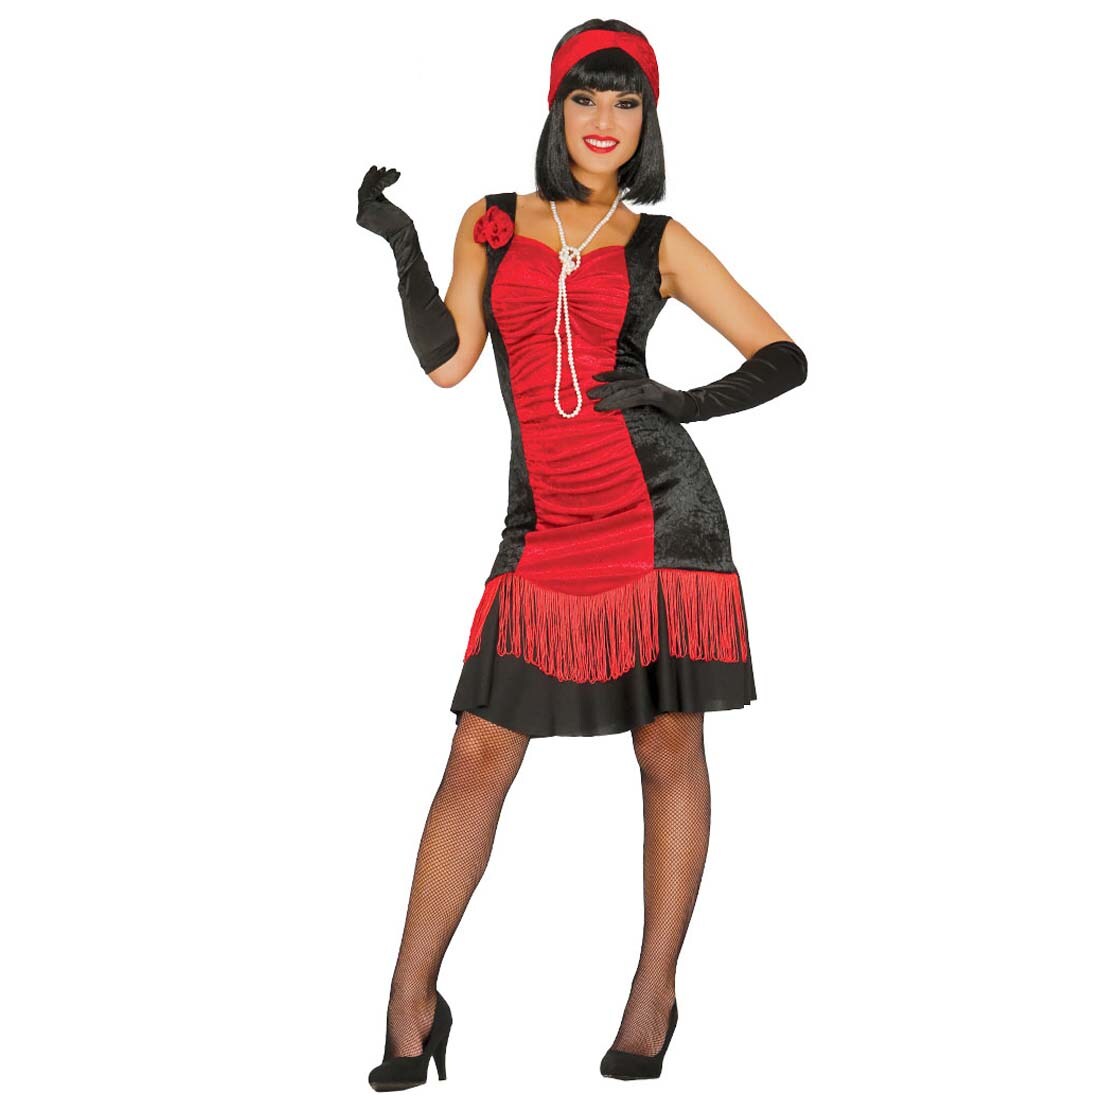 Charlestonkleid Schwarz Rot 20er Jahre Kostüm Damen M 38 40 19 99